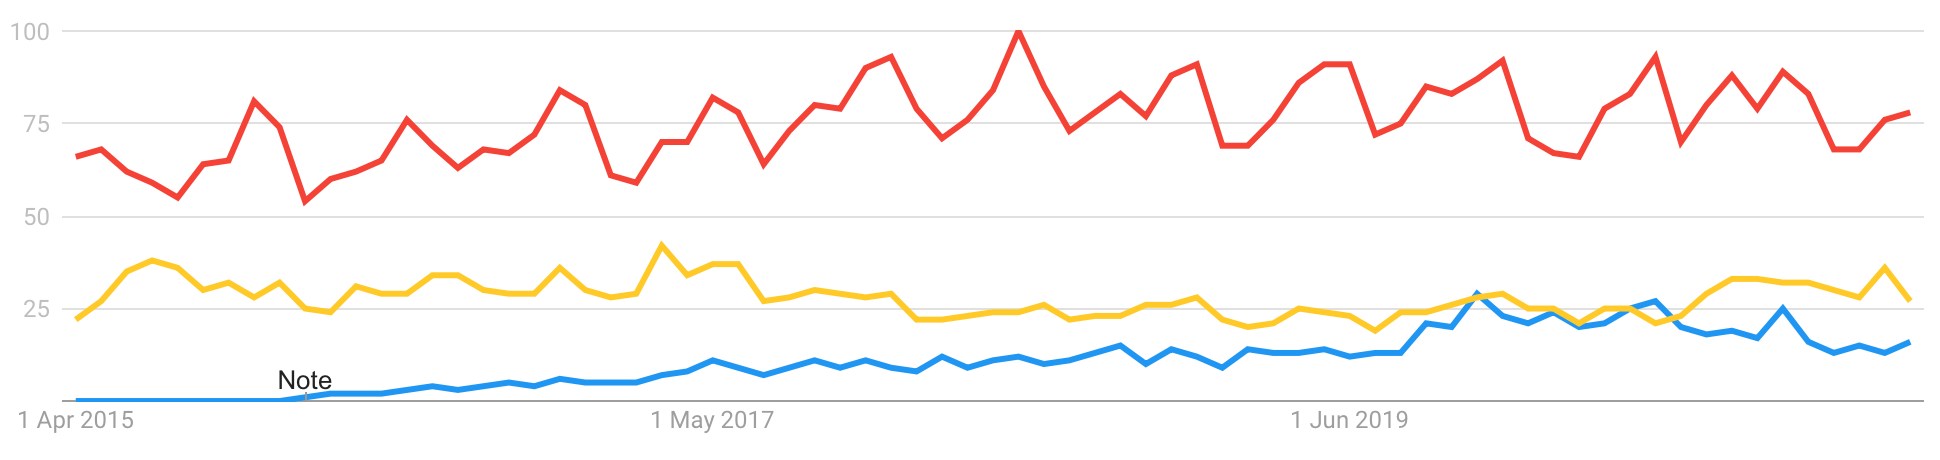 Na-kd vs HM och Zara i Google